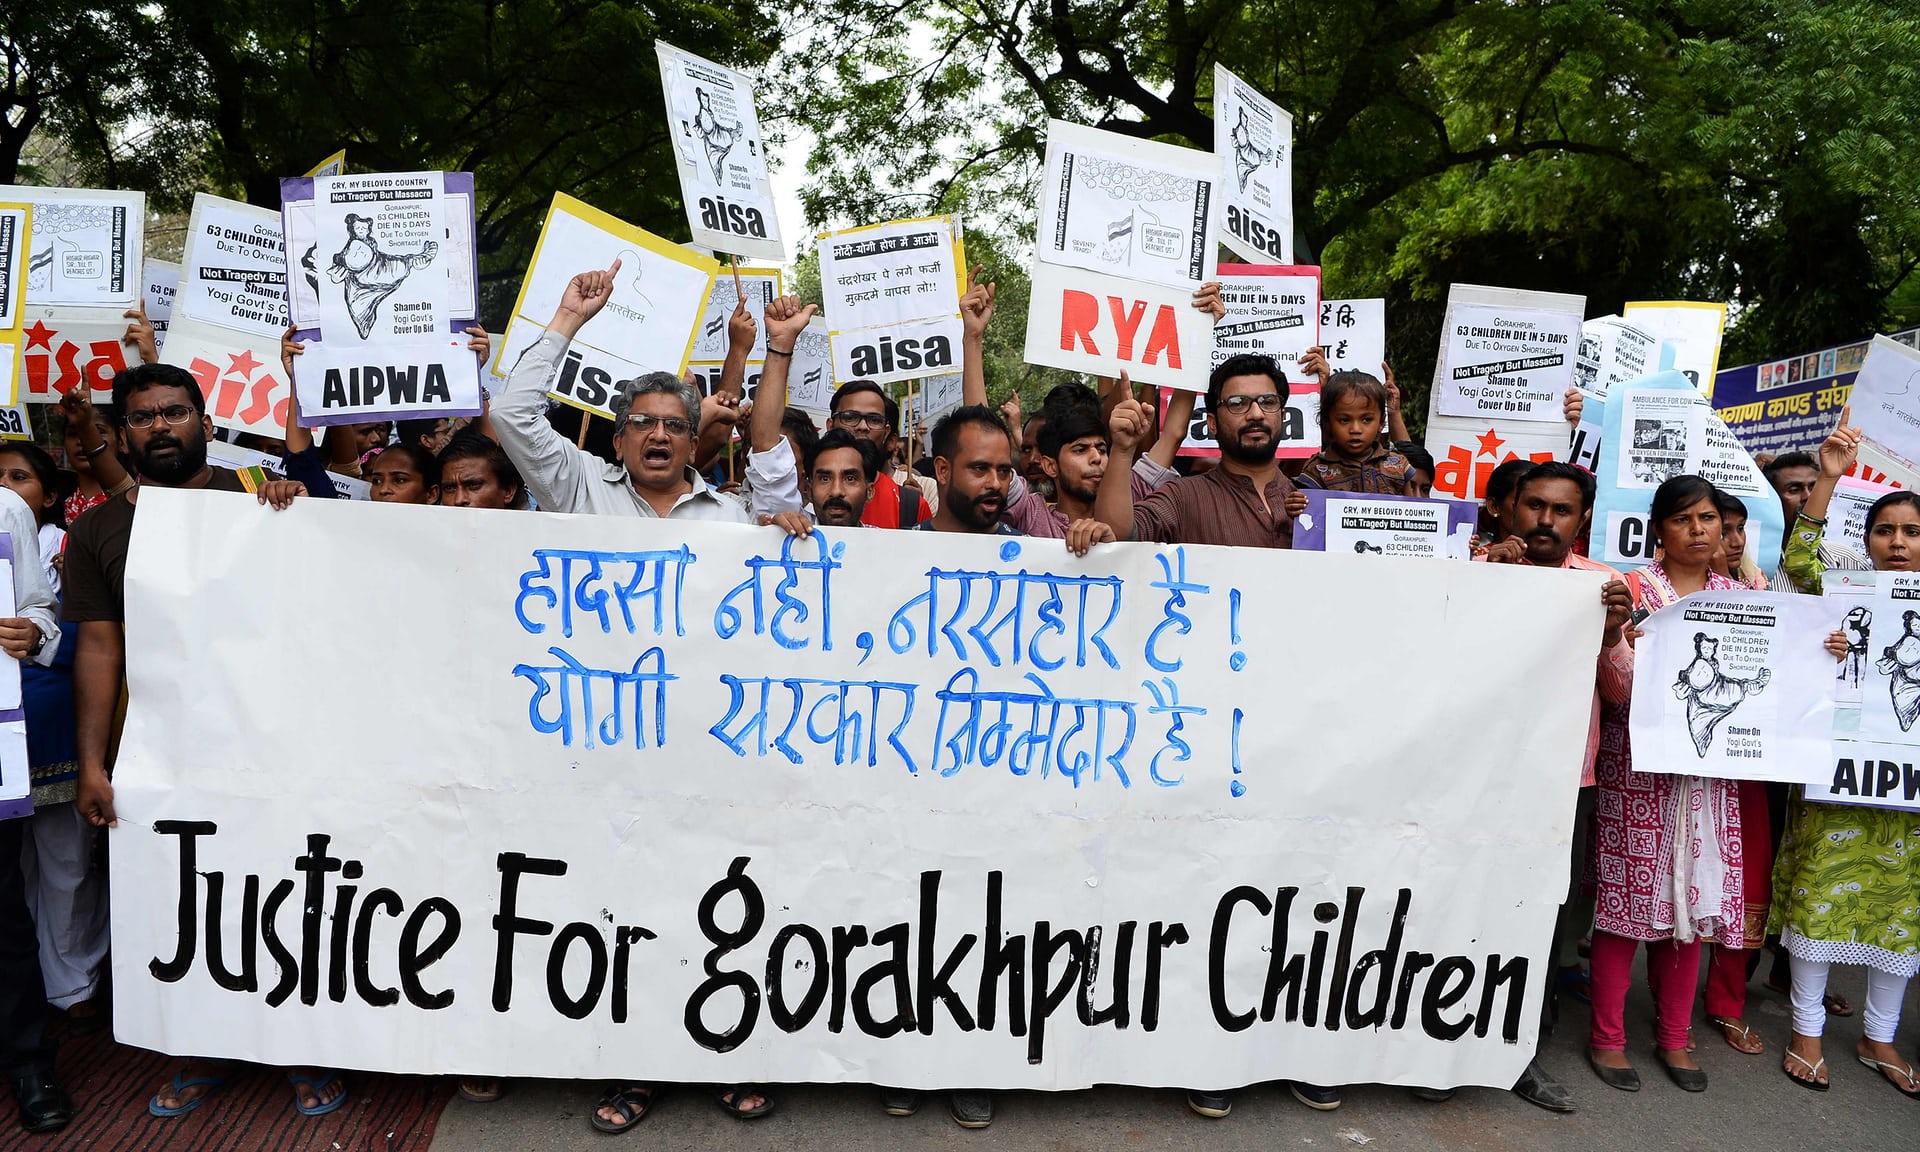 Bê bối y tế ở Ấn Độ: Gần 70 trẻ tử vong trong bệnh viện